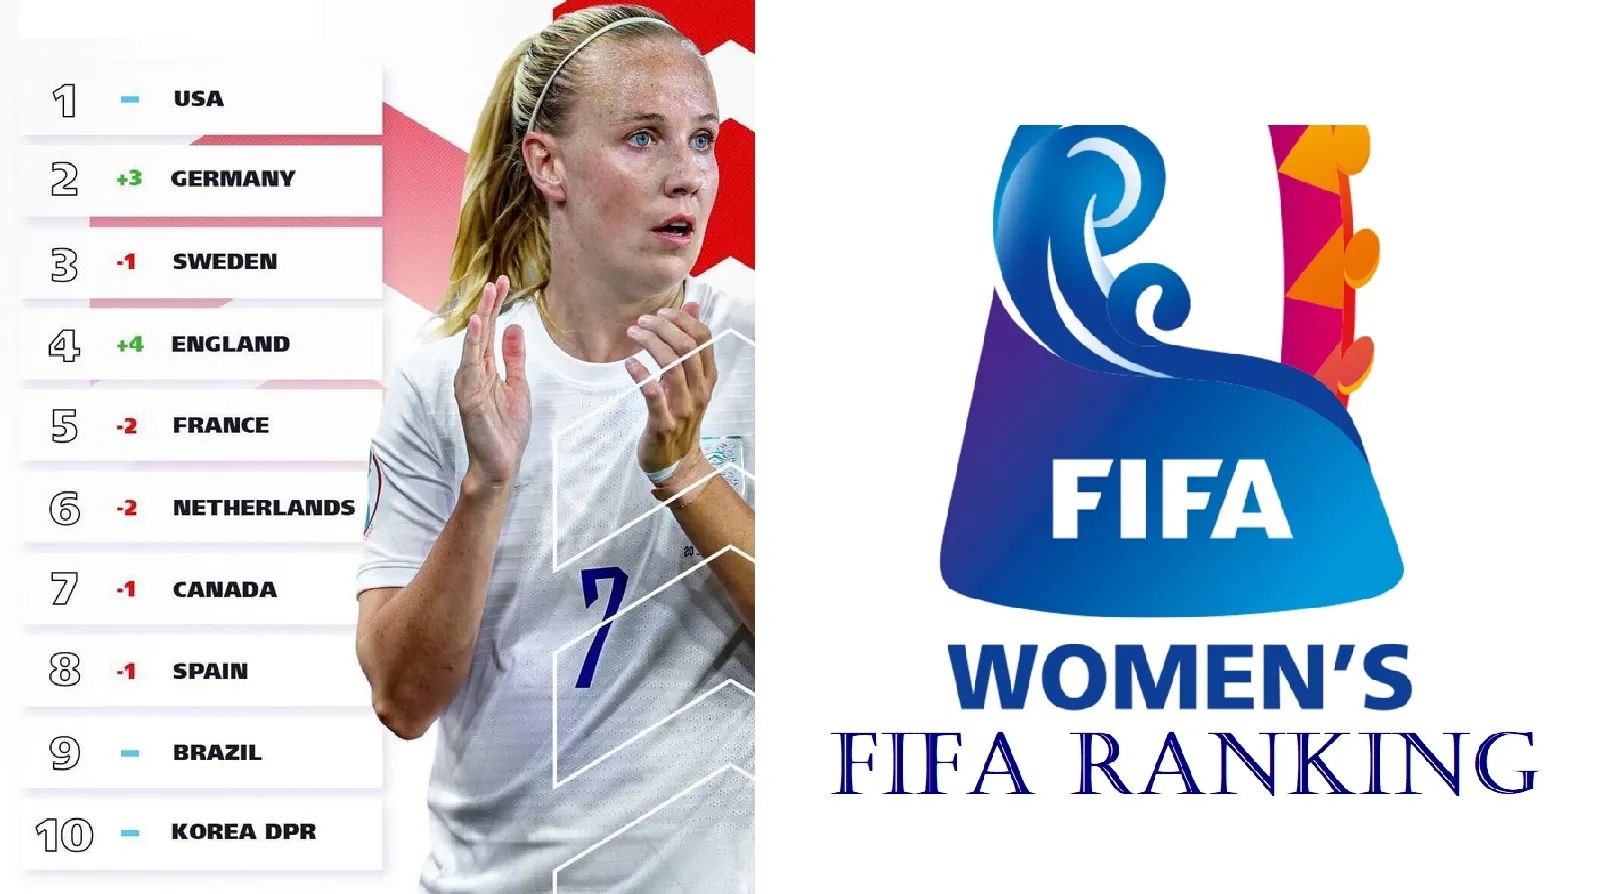 Women's FIFA Ranking 2022